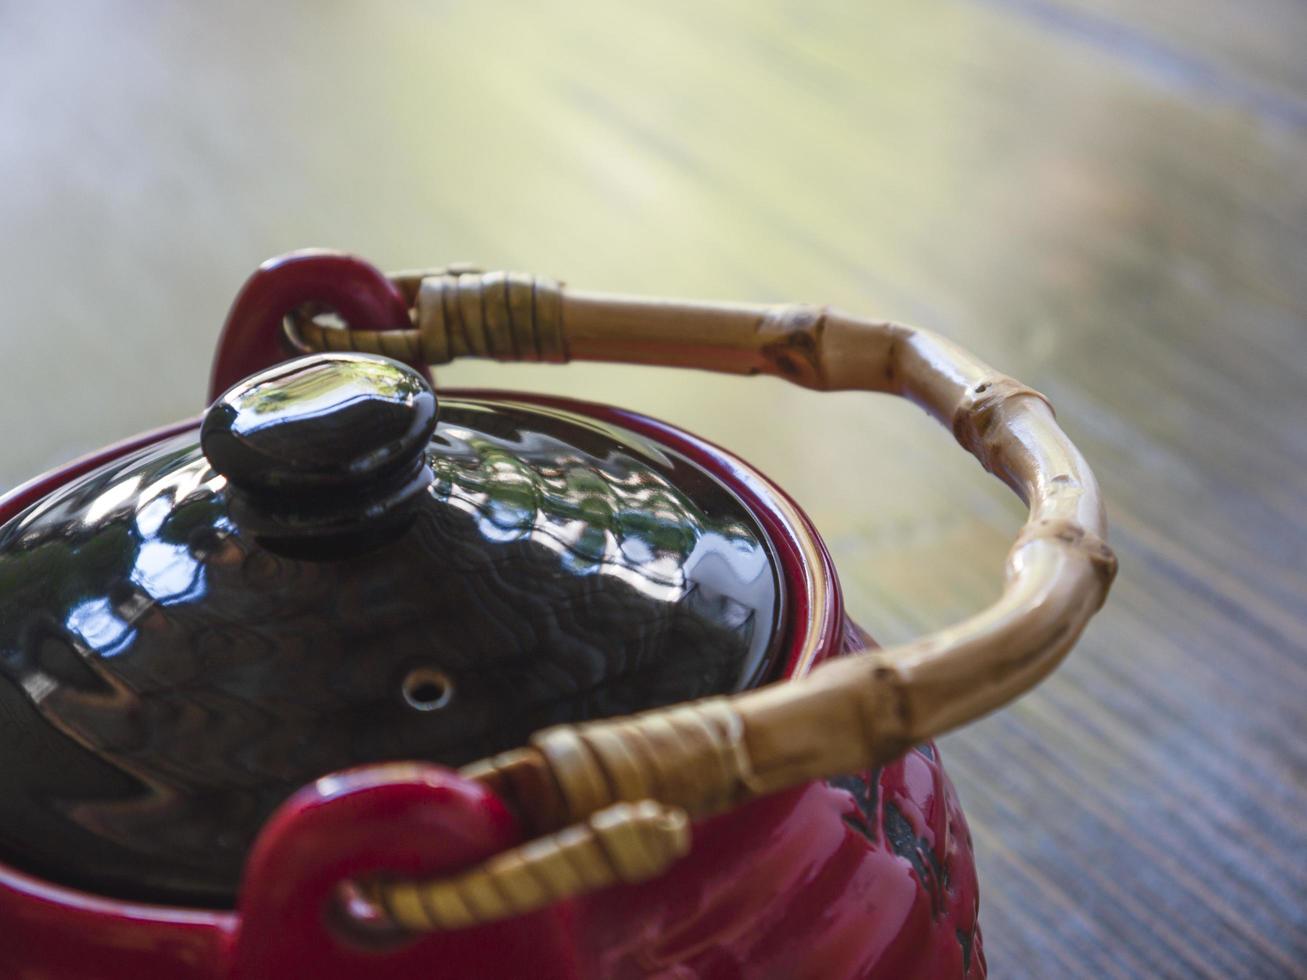 rode chinese theepot op een houten tafel, close-up foto